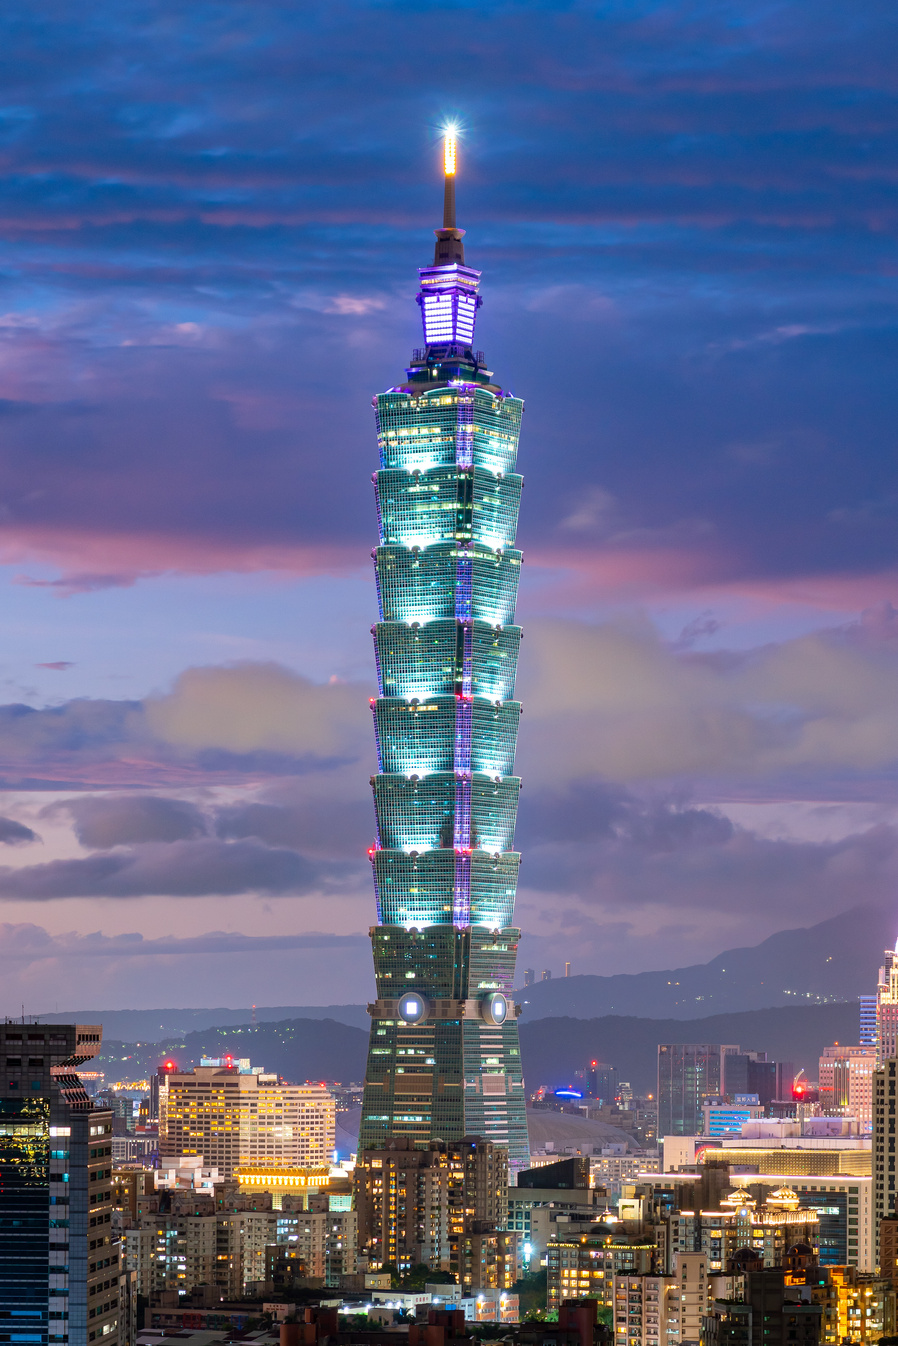 The Taipei 101 Building in Taipei, Taiwan